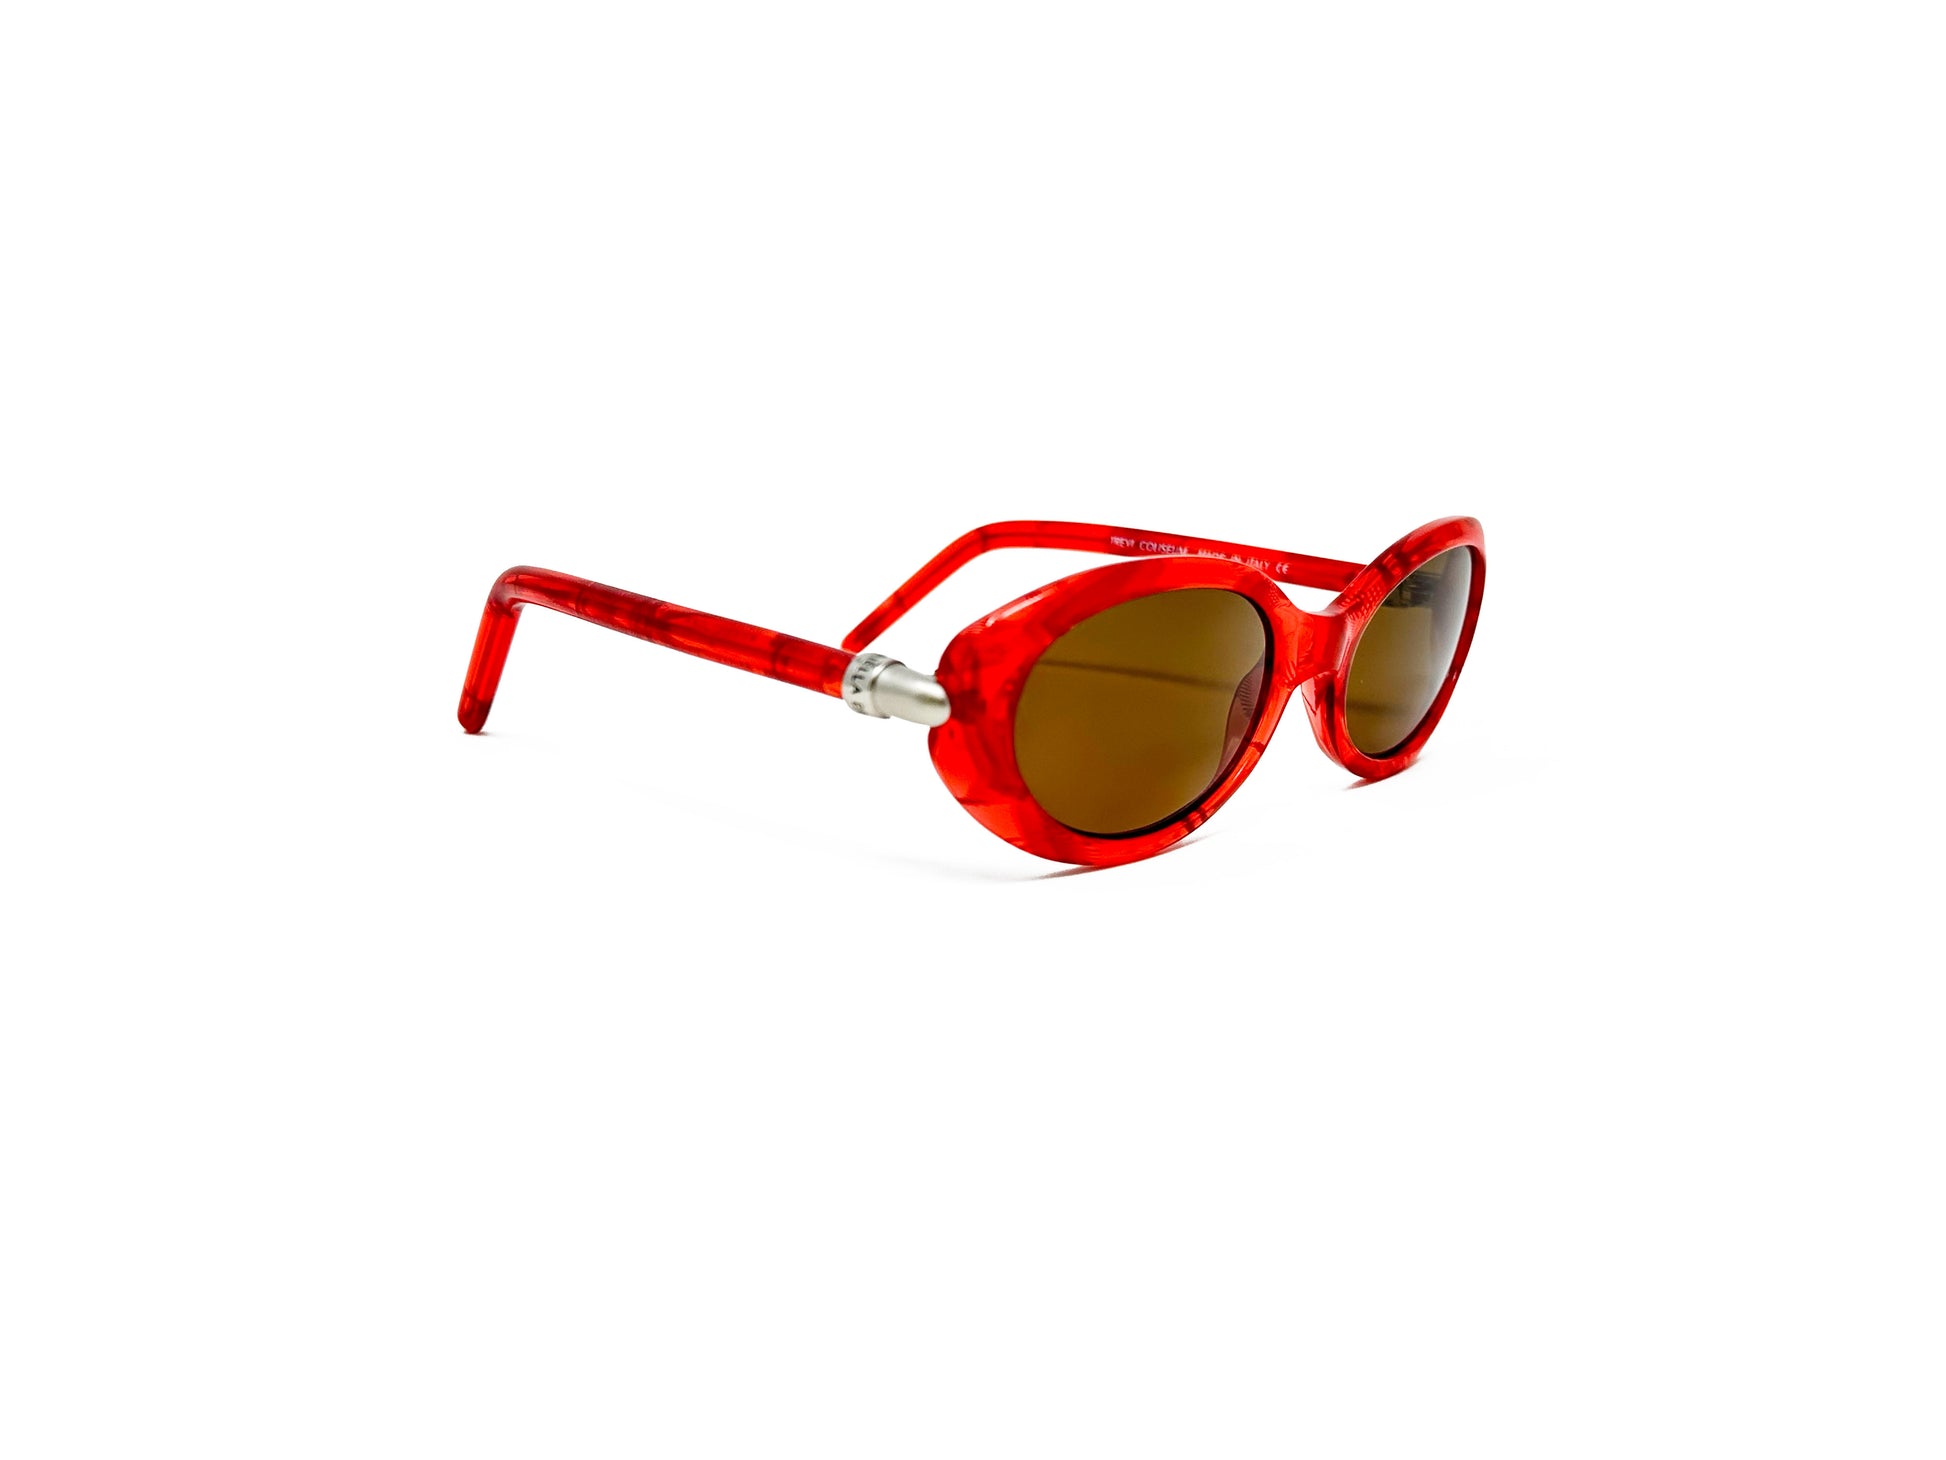 Mariella Burani oval sunglasses. Model: 2000-1 Color 1 Red. Side view.